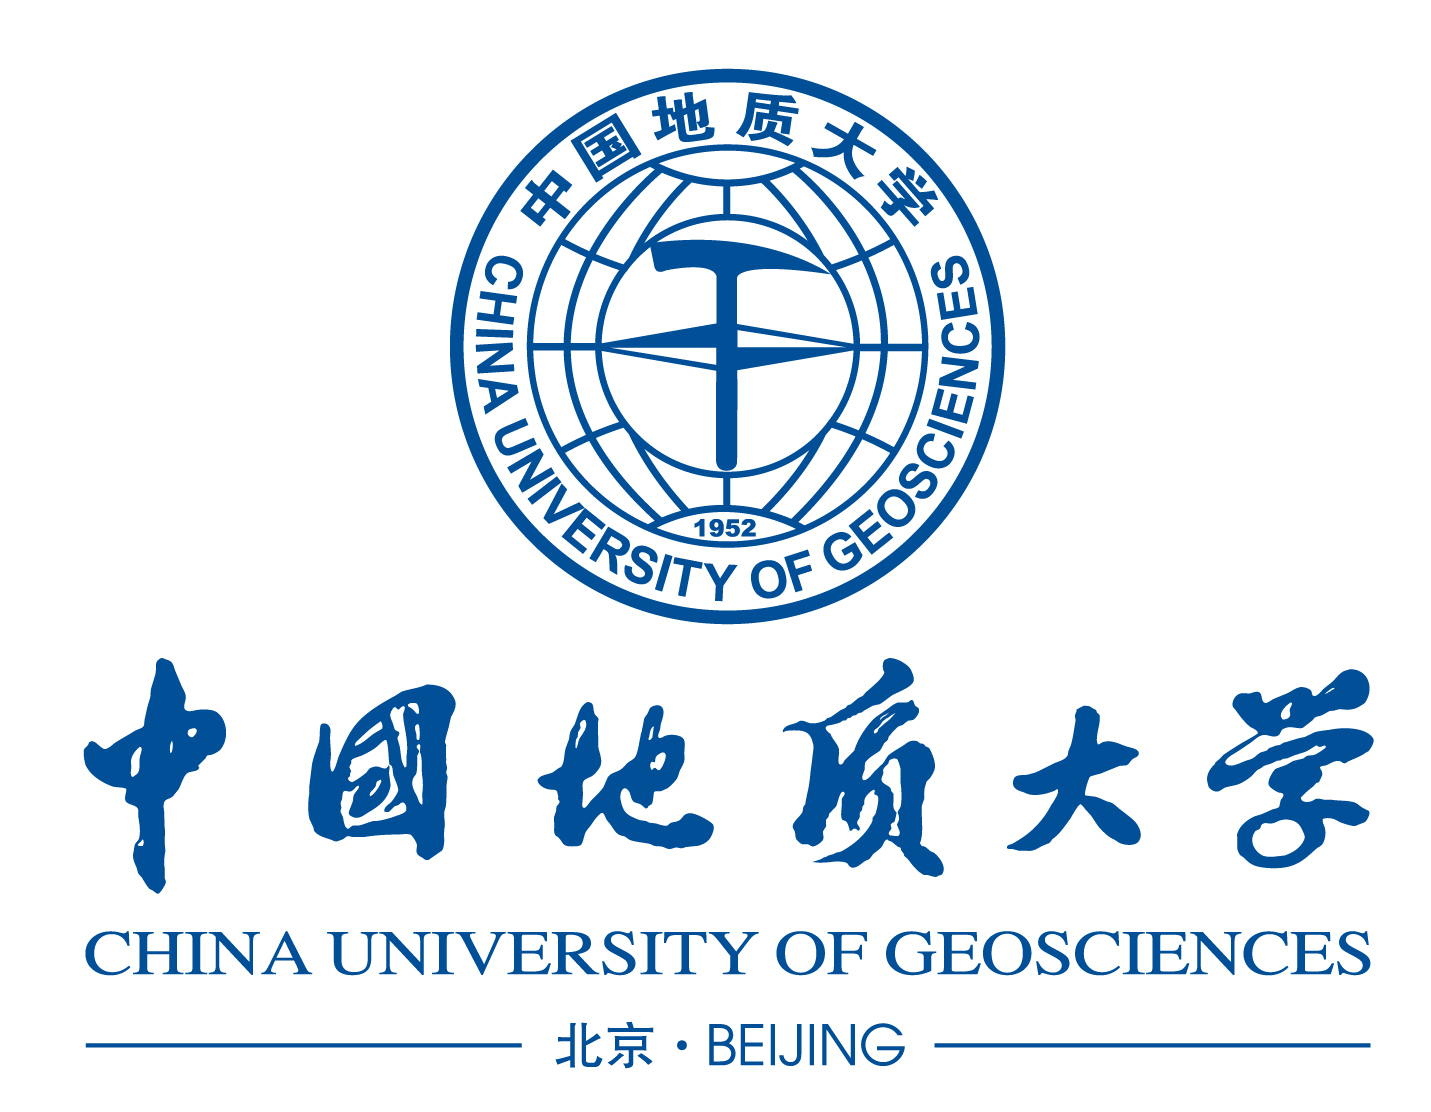 中国地质大学(北京)换校徽,校歌,是要独立还是其他原因?